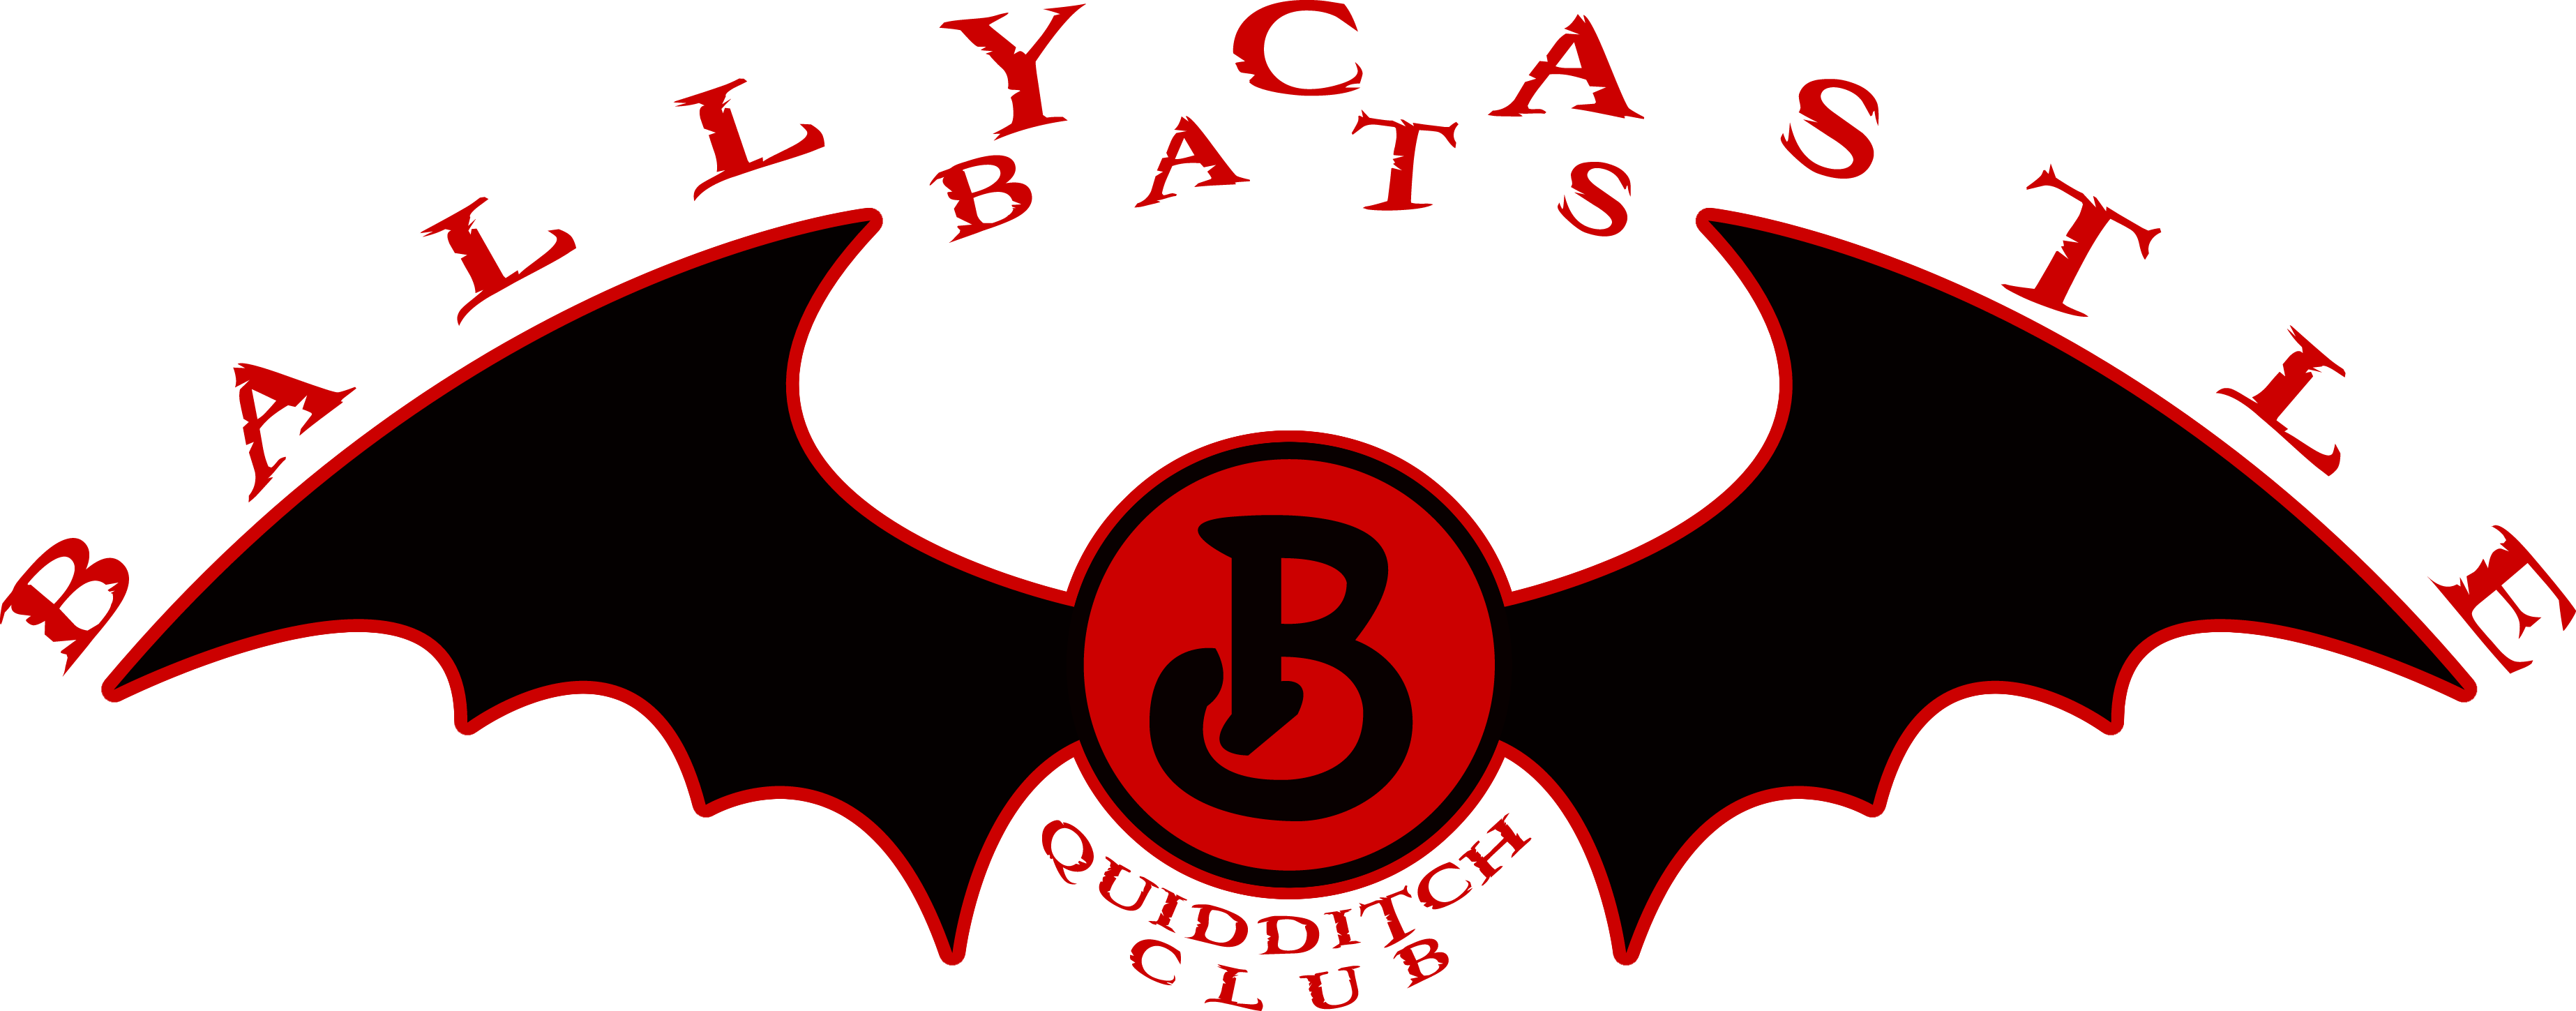 Ballycastle Bats logo 2